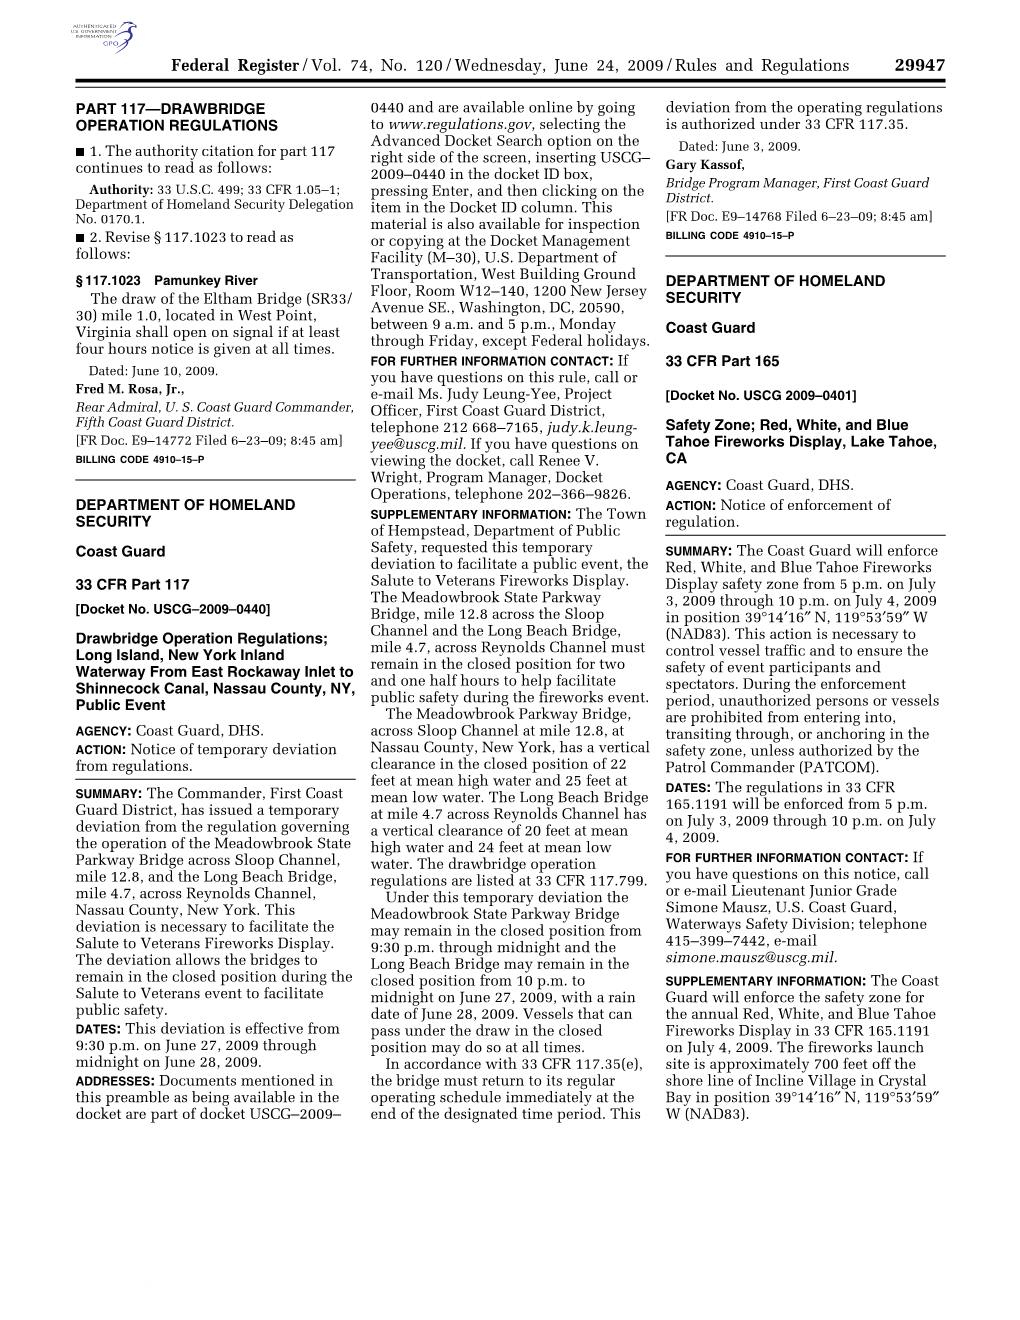 Federal Register/Vol. 74, No. 120/Wednesday, June 24, 2009